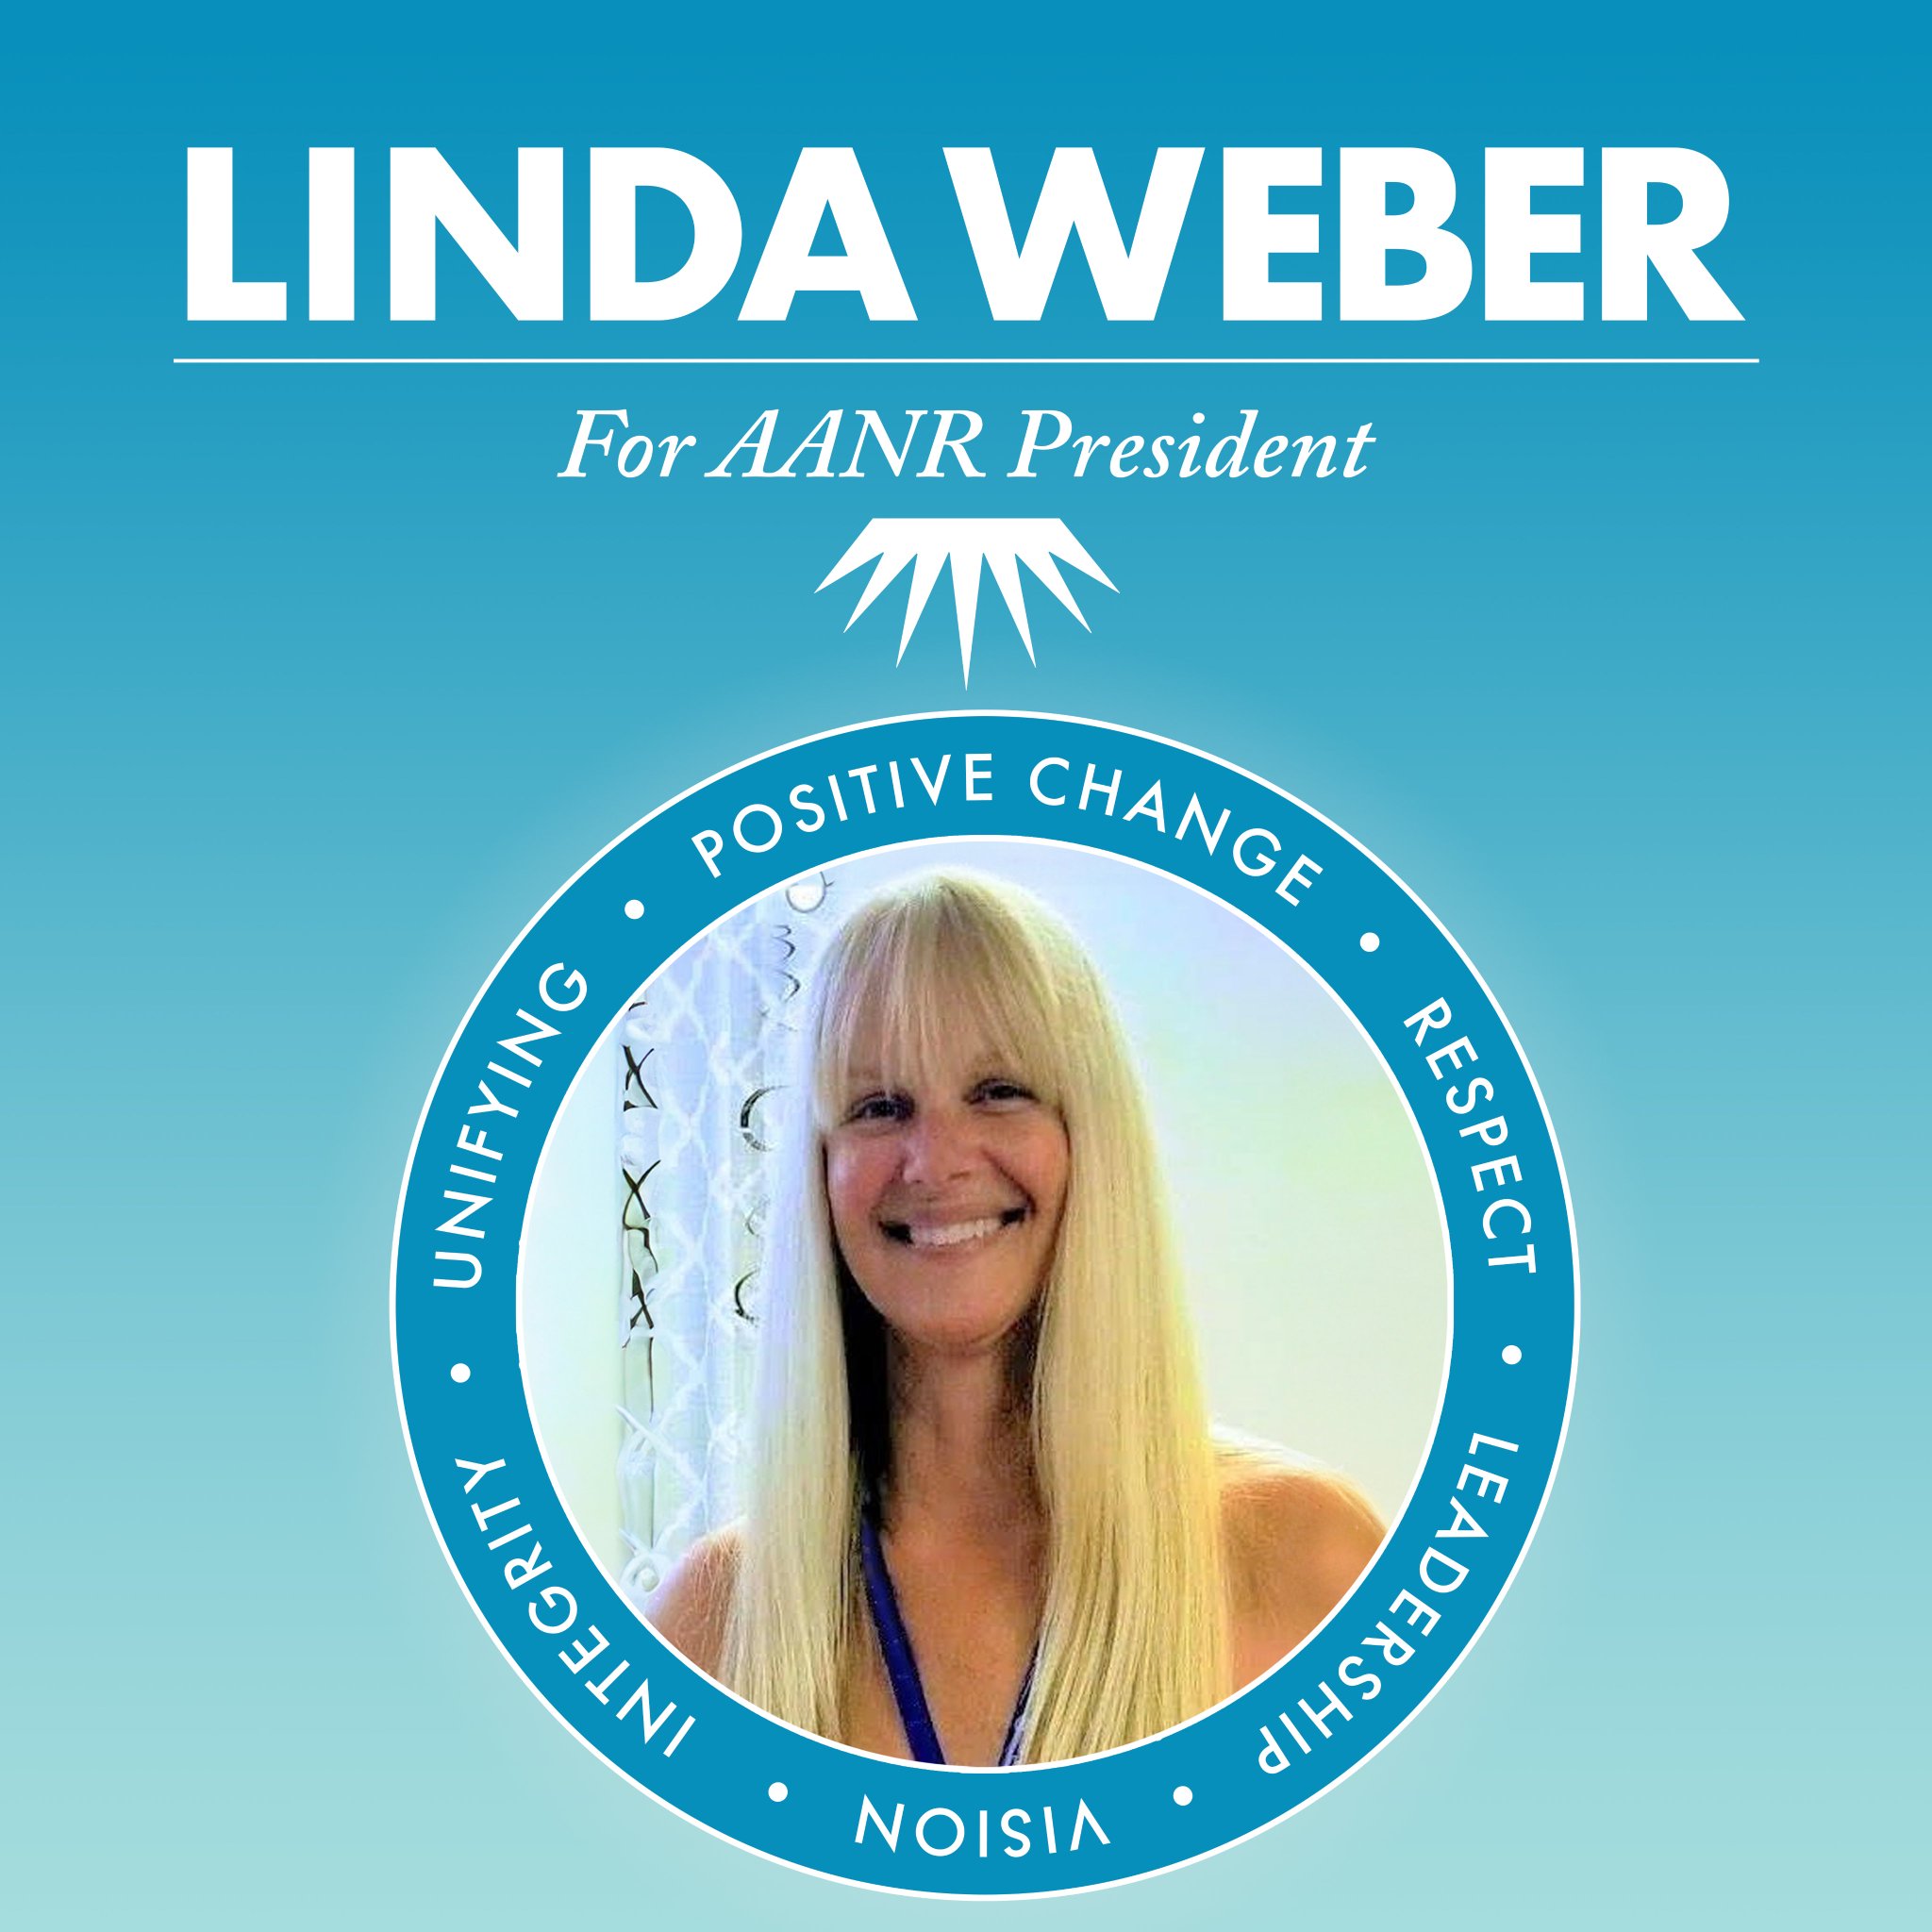 Linda Weber for AANR President